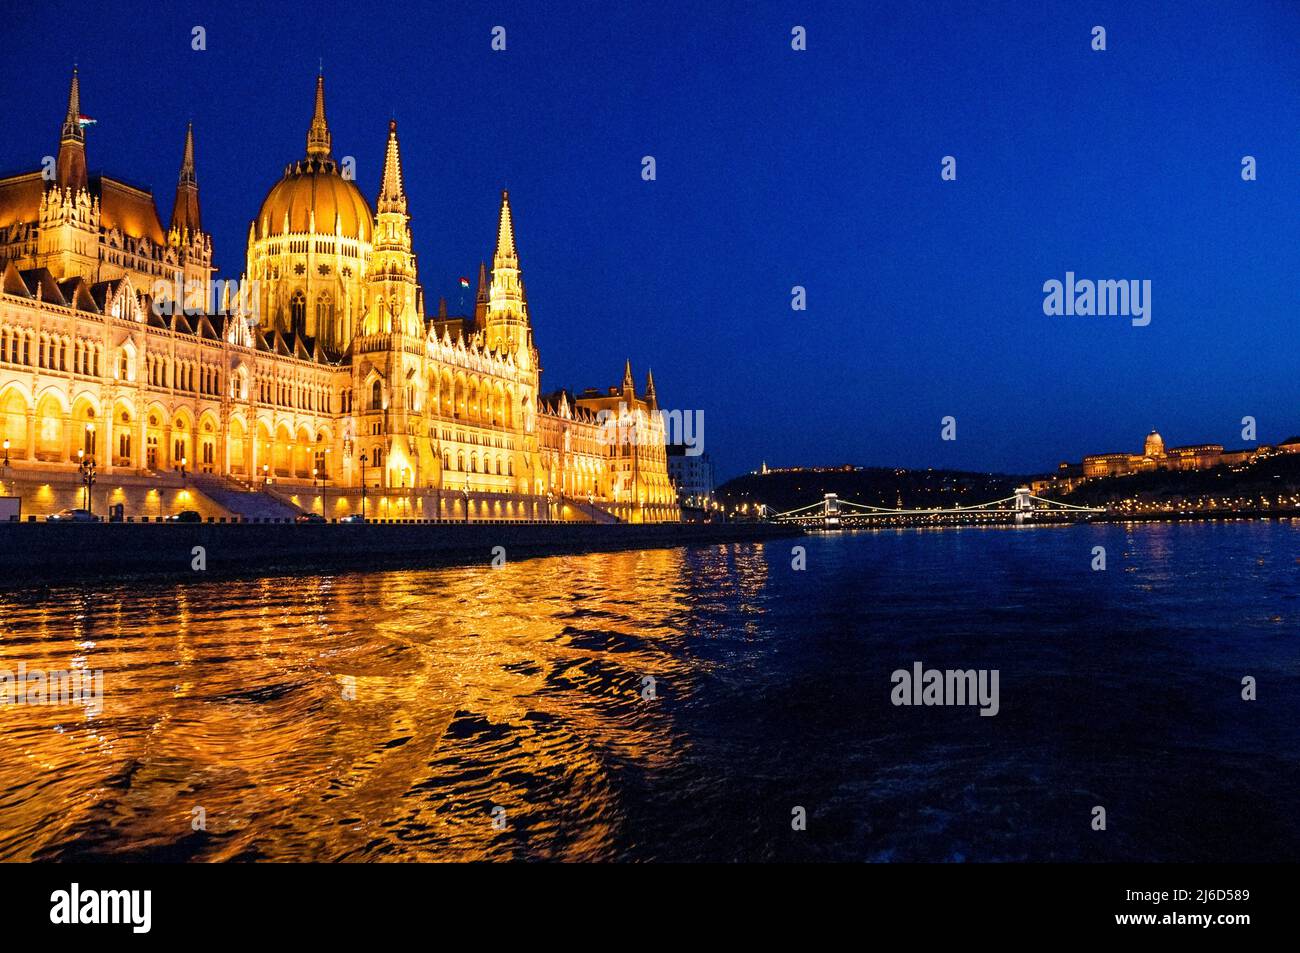 Das ungarische Parlamentsgebäude, die Széchenyi-Kettenbrücke und das Budaer Schloss an der Donau in Budapest. Stockfoto